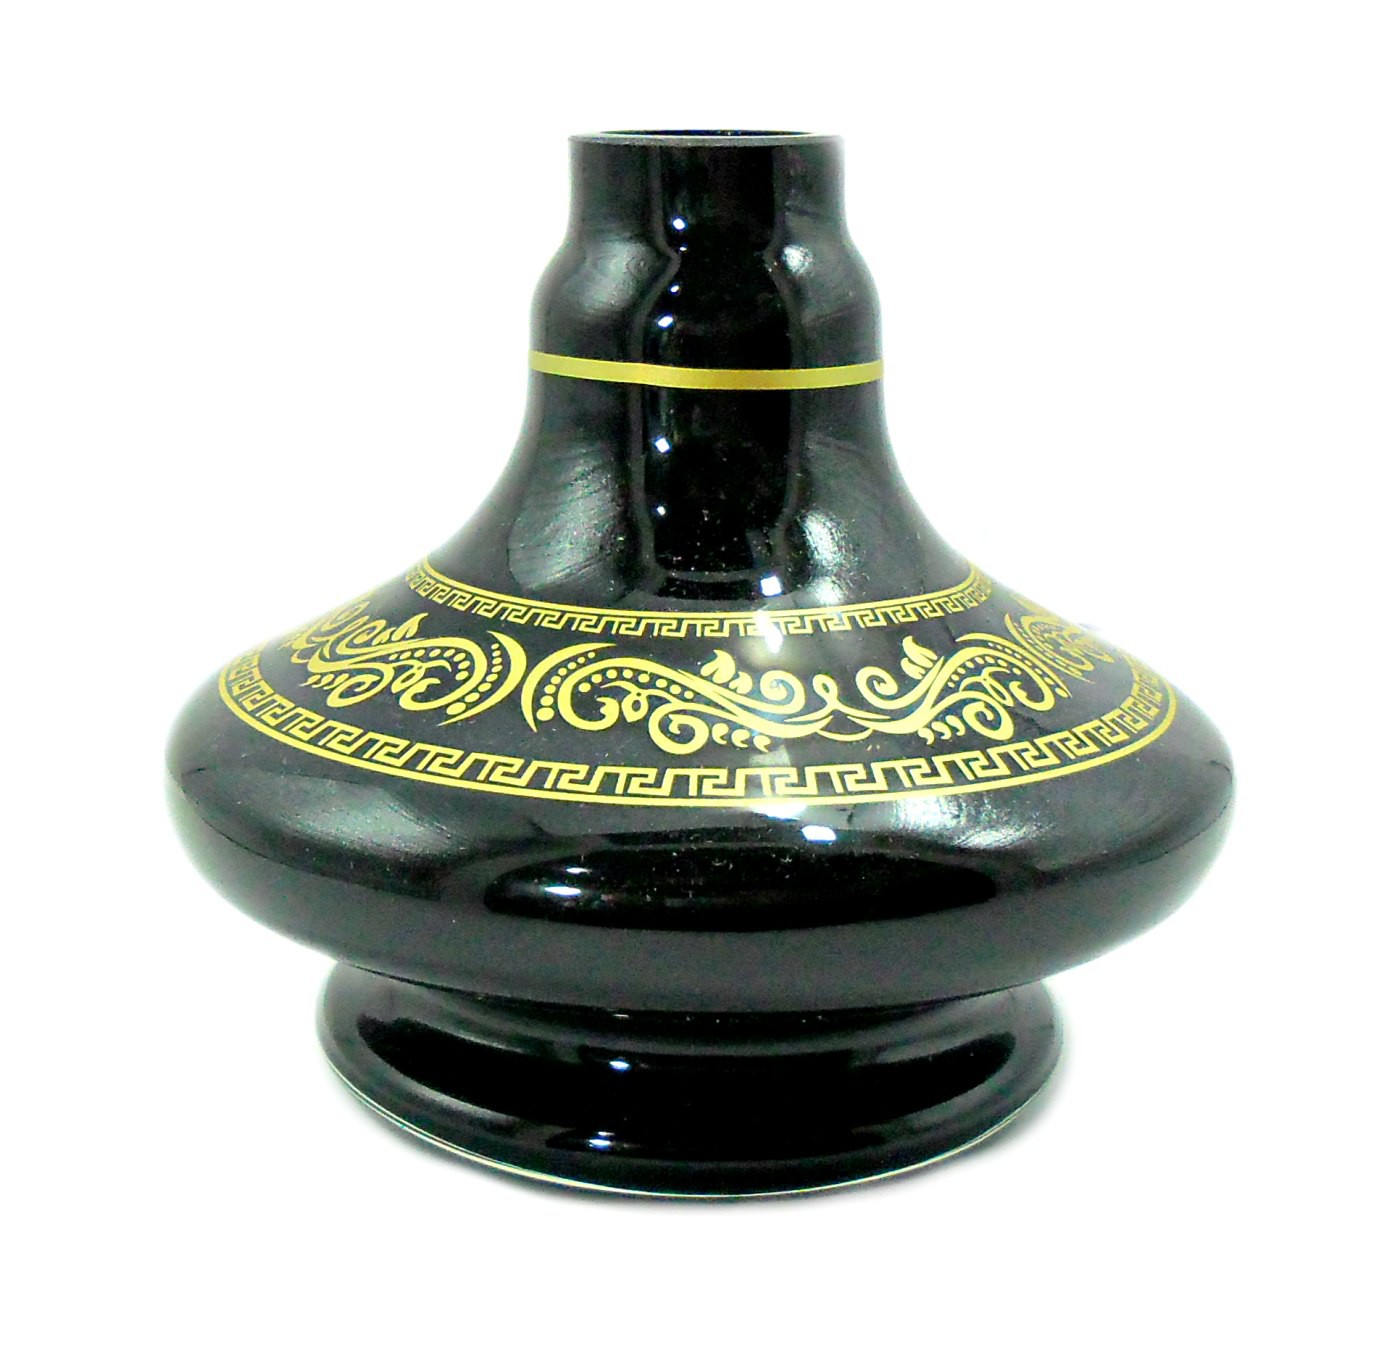 Vaso/base para narguile SHISHA GLASS modelo ALADIN (13,5cm), listras e desenhos dourados. 3,9cm diâm. bocal